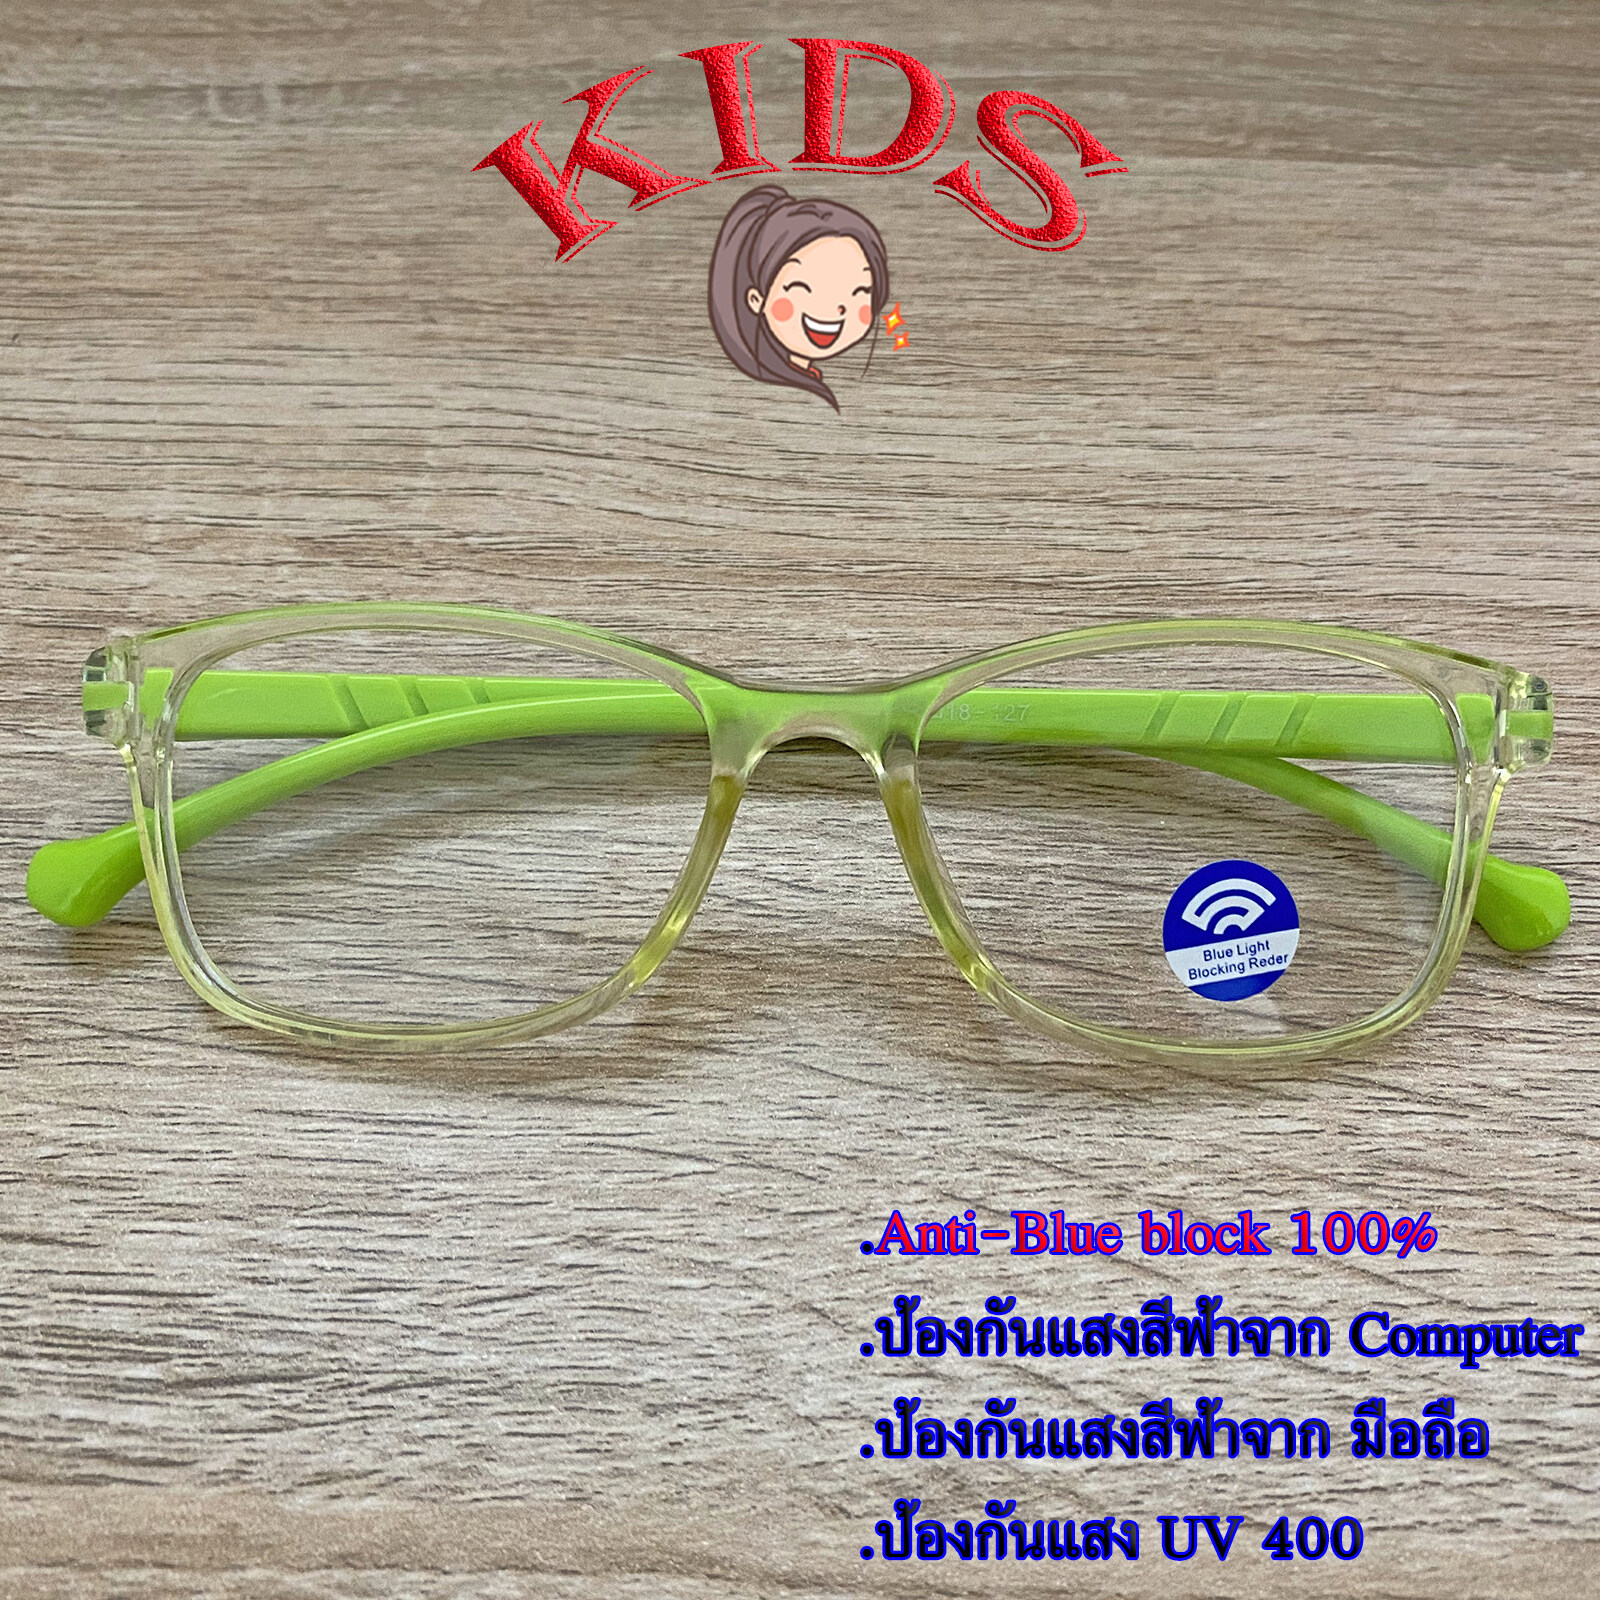 Blue Block แว่นตาเด็ก กรองแสงสีฟ้า กรองแสงคอม รุ่น 1006 สีเขียว พลาสติก พีซี เกรด เอ ขาข้อต่อ กรองแสงสูงสุด95% กัน UV 100% Glasses